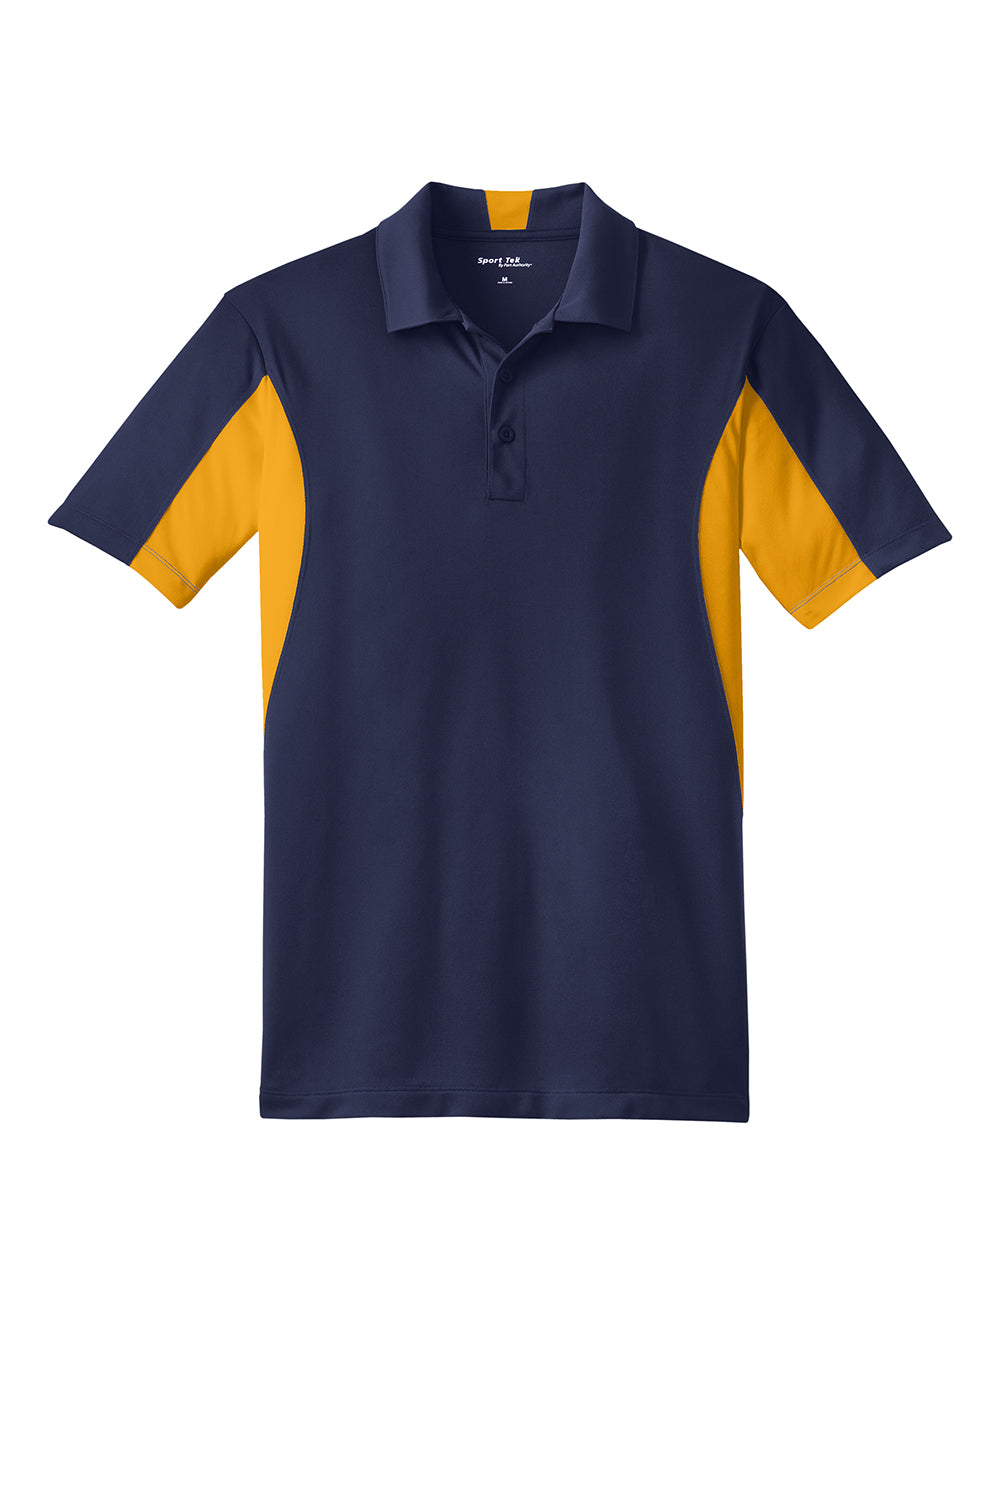 Sport-Tek Mens Sport-Wick Moisture Wicking Short Sleeve Polo Shirt True Navy Blue/Gold Flat Front